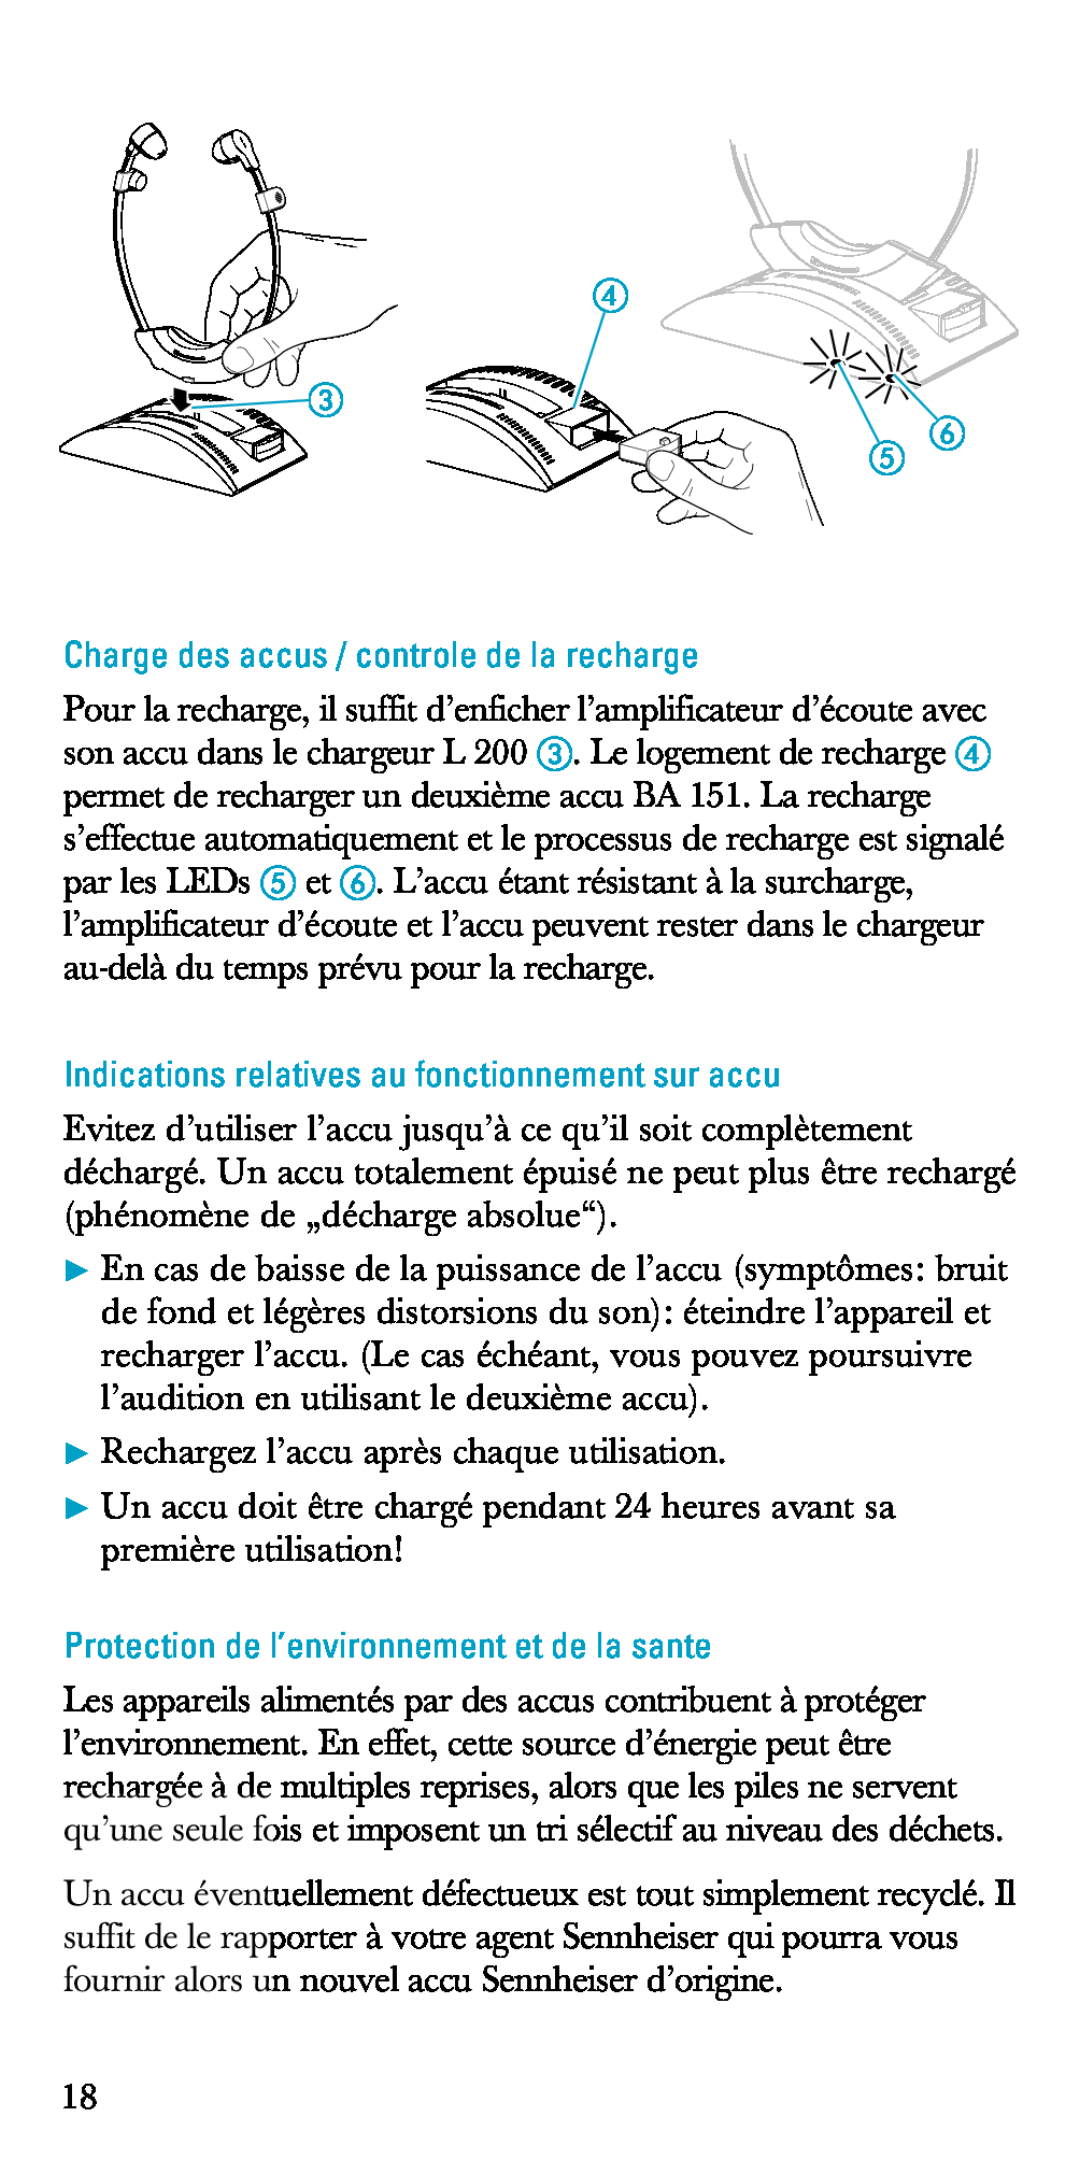 Sennheiser A200 manual Charge des accus / controle de la recharge, Indications relatives au fonctionnement sur accu 